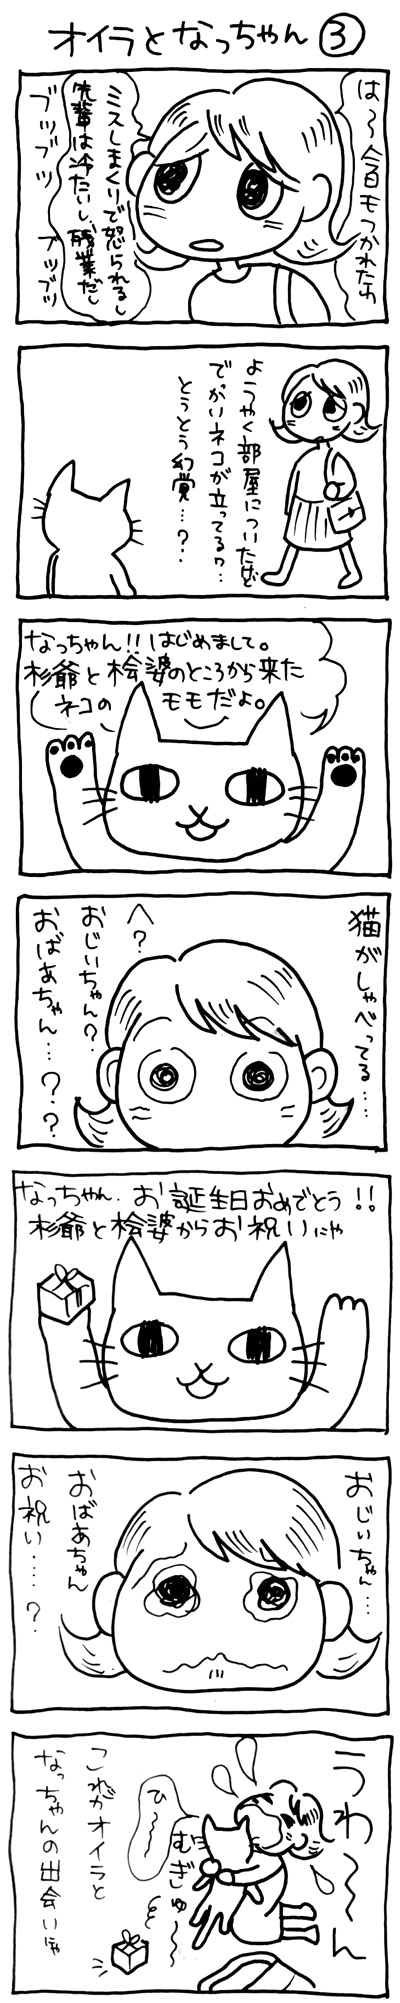 木工漫画pro03